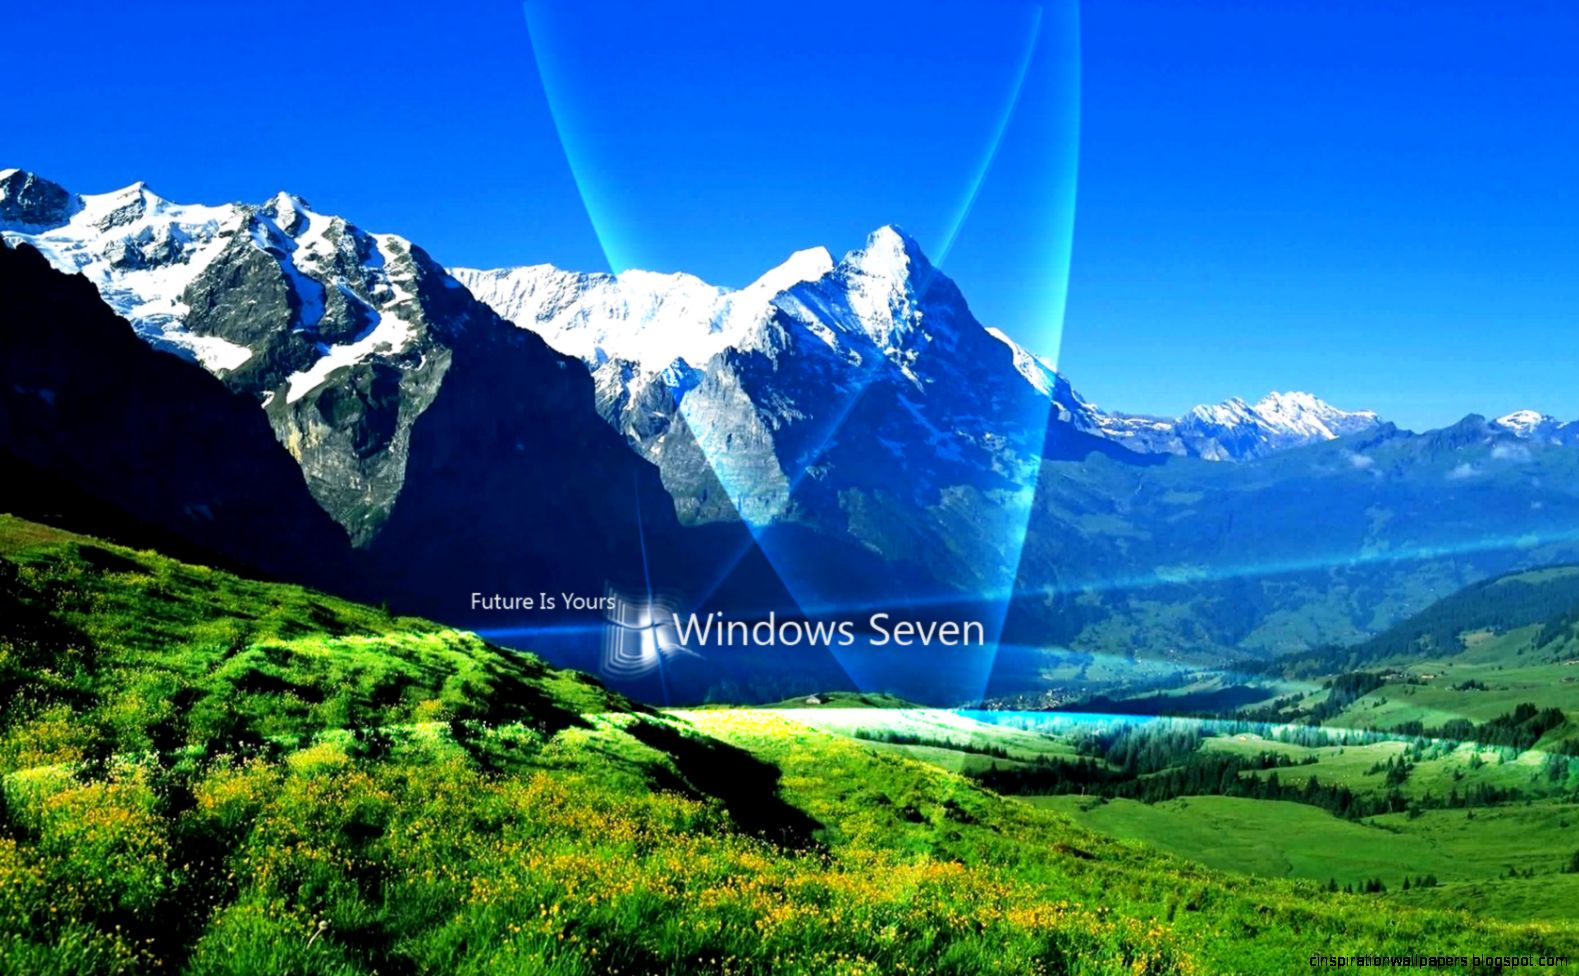 Windows 7 Official Wallpaper Hd